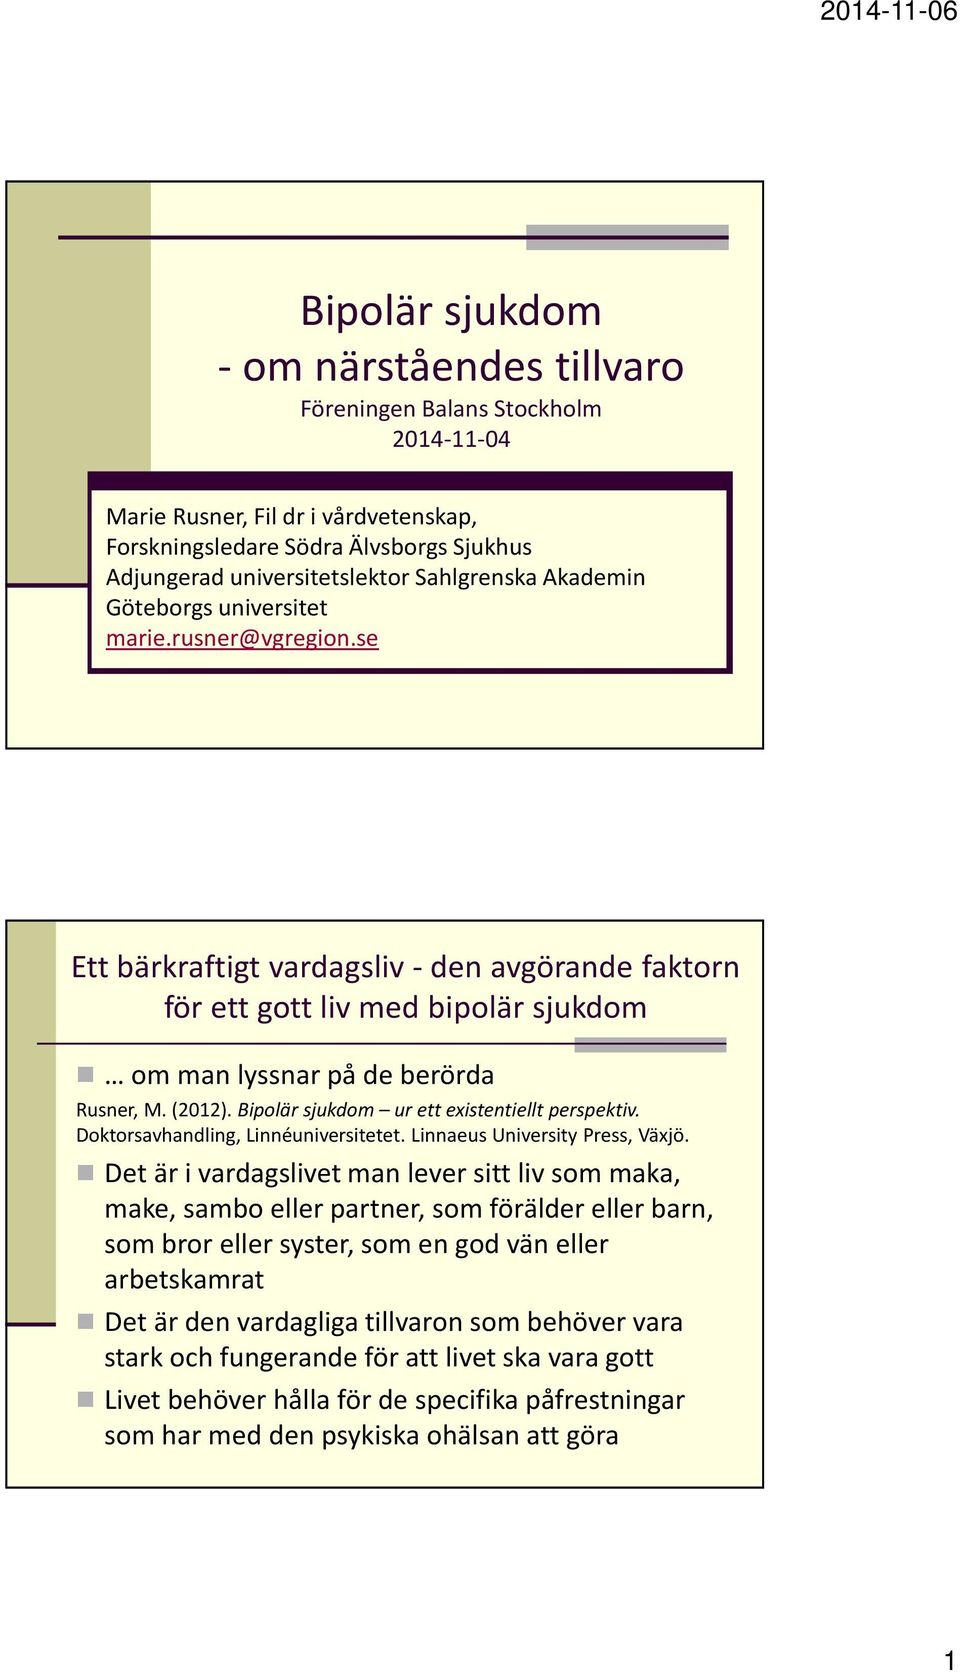 (2012). Bipolär sjukdom ur ett existentiellt perspektiv. Doktorsavhandling, Linnéuniversitetet. Linnaeus University Press, Växjö.